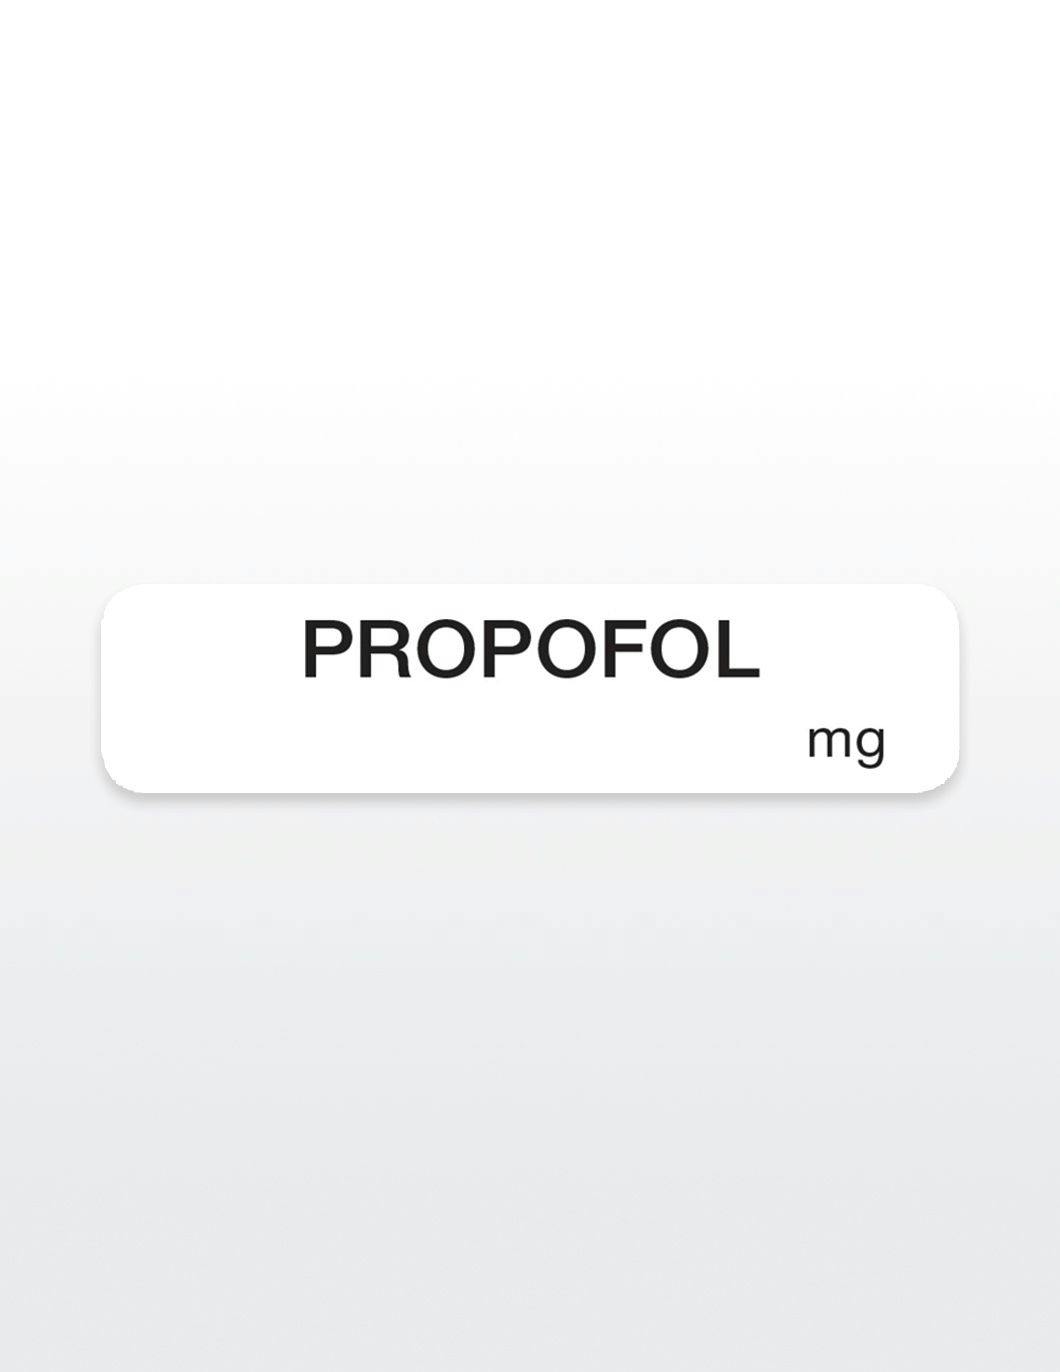 Propofol-drug-syringe-stickers